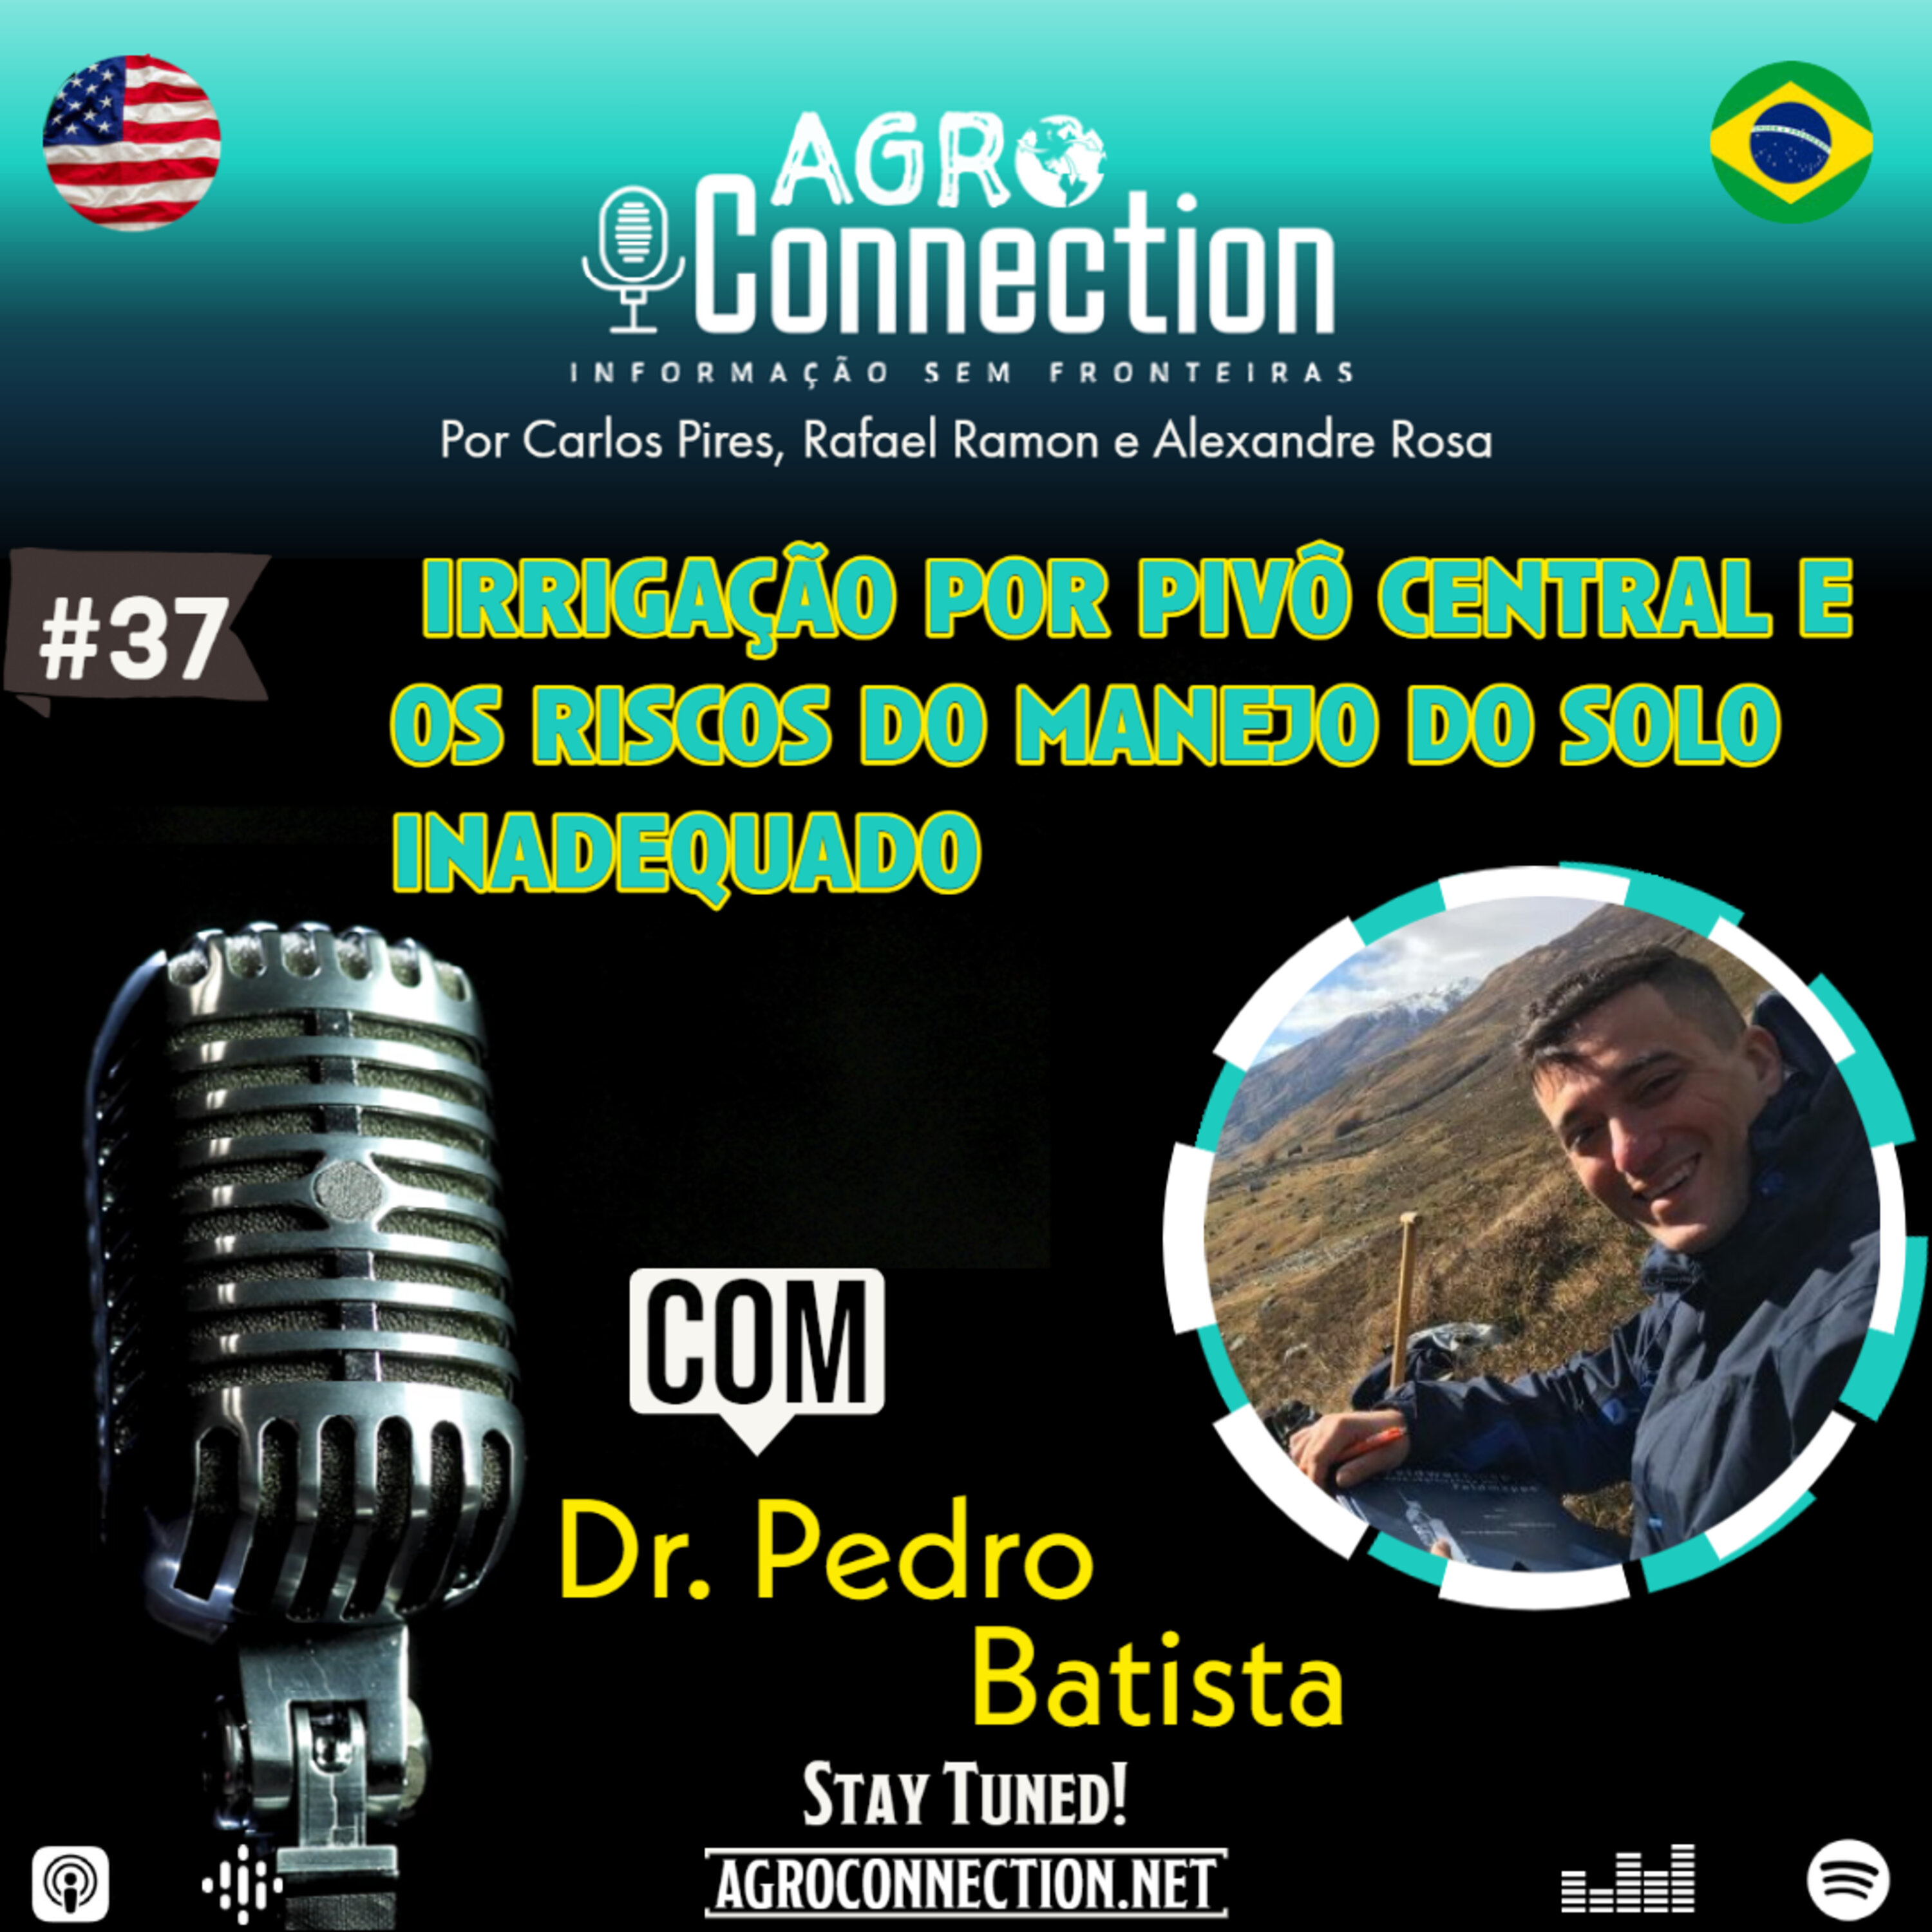 EP #37 – Irrigação por pivô central e os riscos do manejo do solo inadequado - Com Dr. Pedro Batista